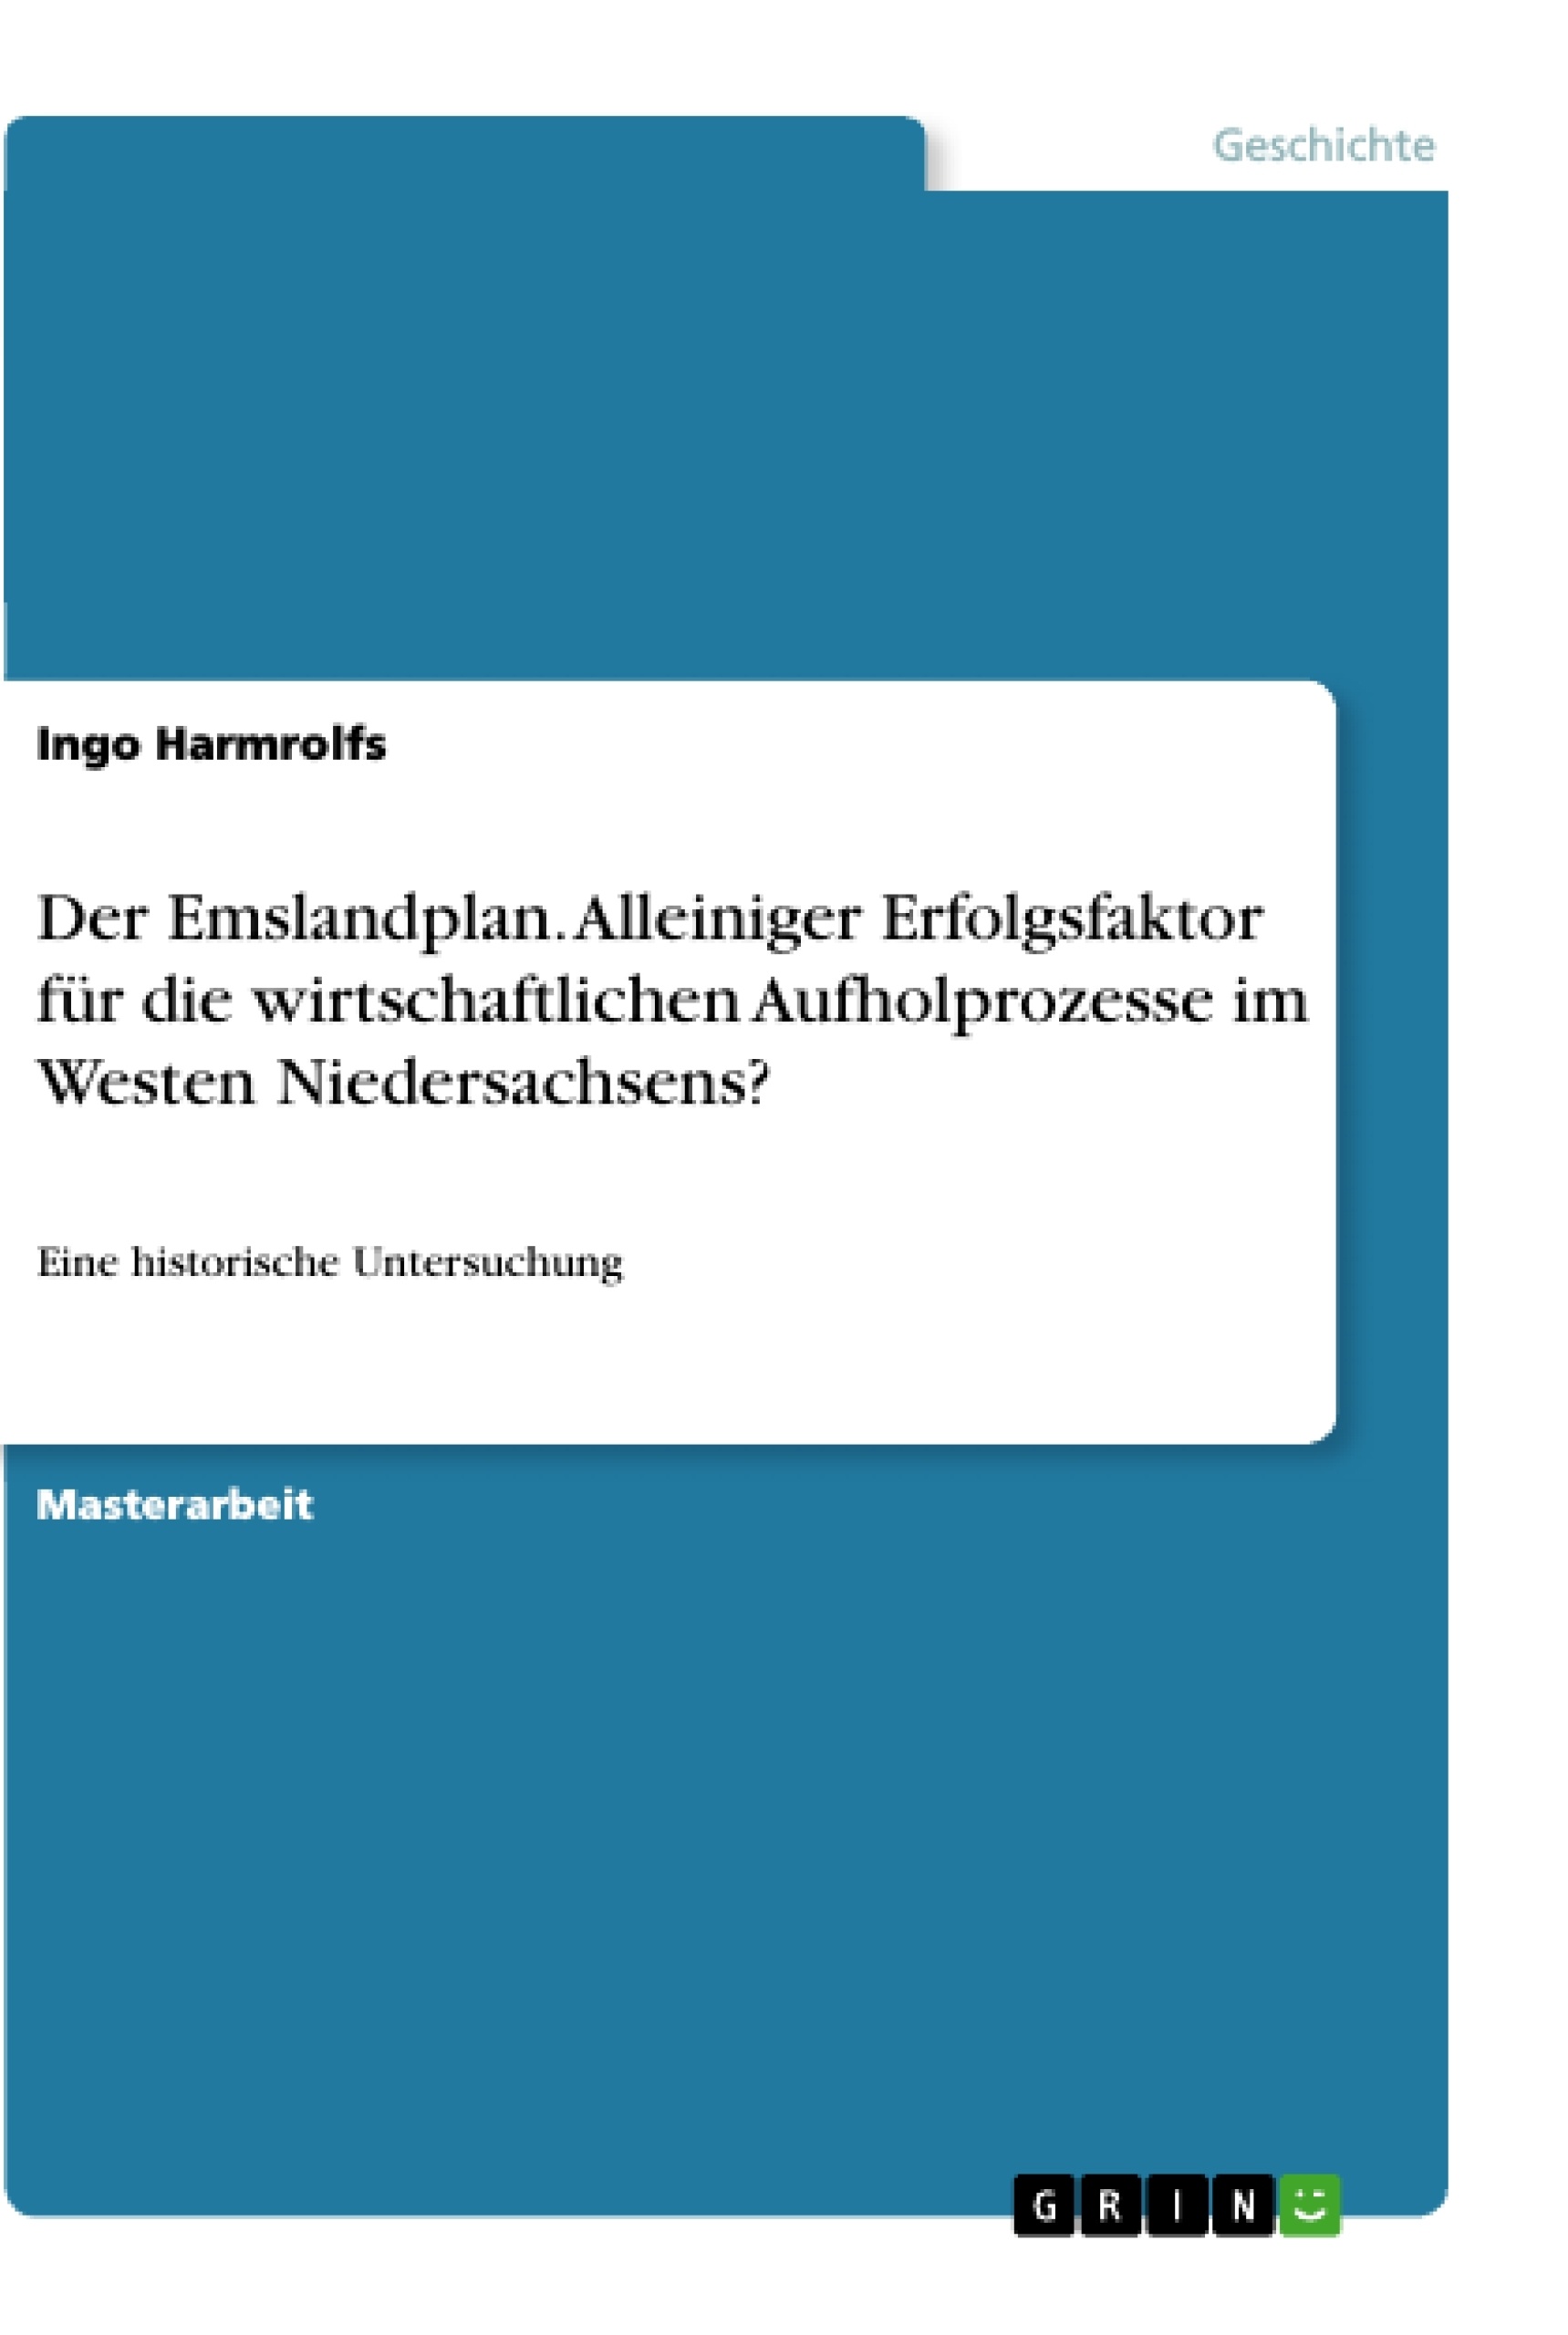 Title: Der Emslandplan. Alleiniger Erfolgsfaktor für die wirtschaftlichen Aufholprozesse im Westen Niedersachsens?